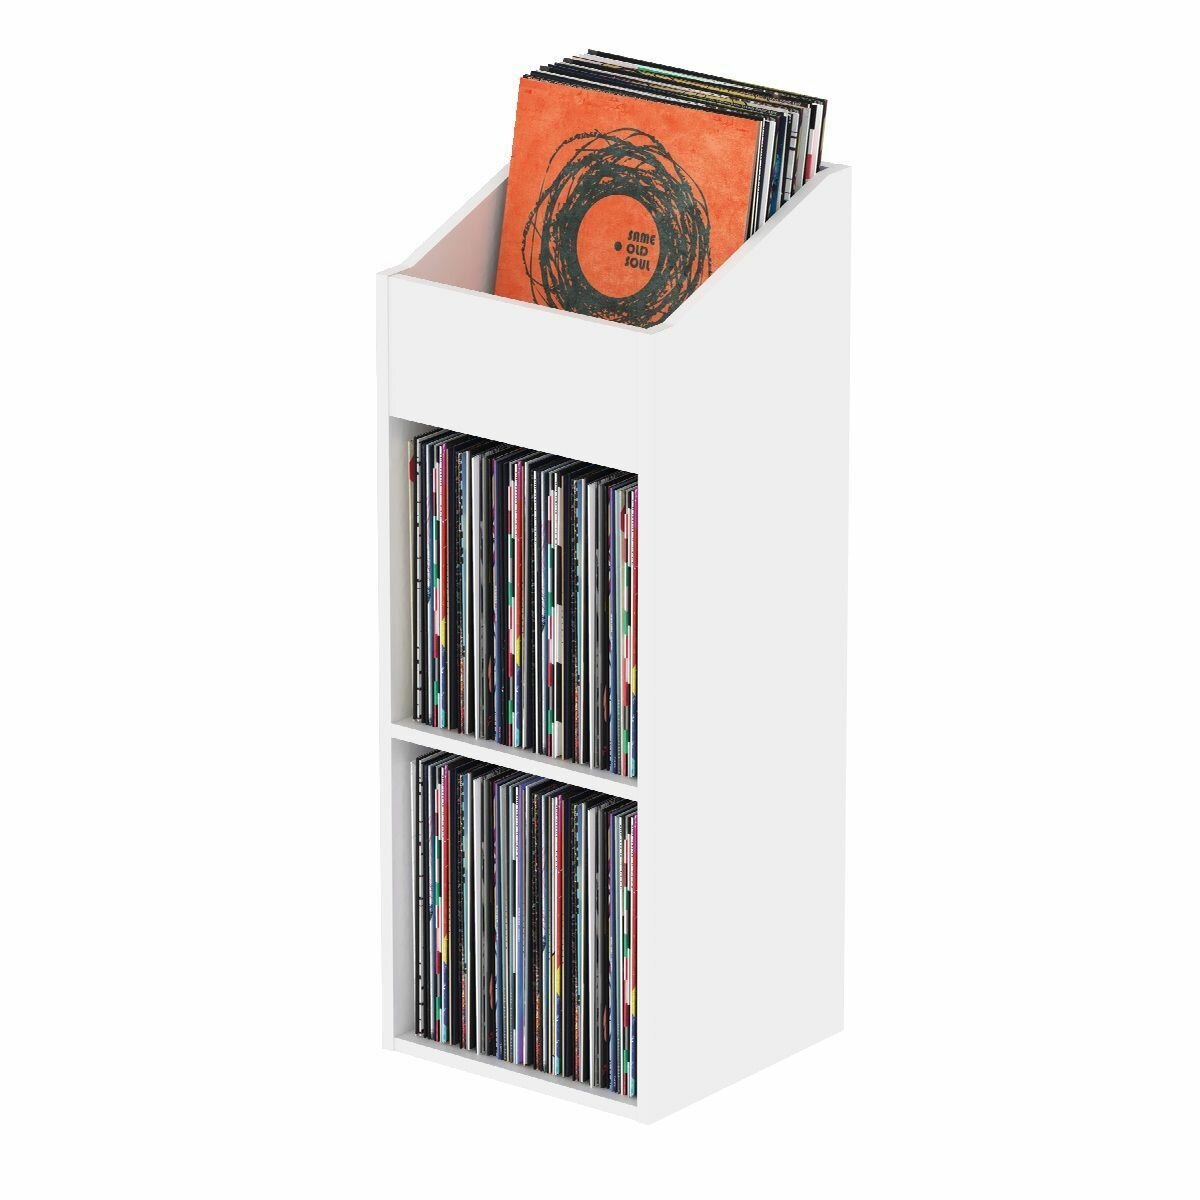 Glorious Record Rack 330 White стойка для виниловых пластинок, вместимость до 330 шт, цвет белый